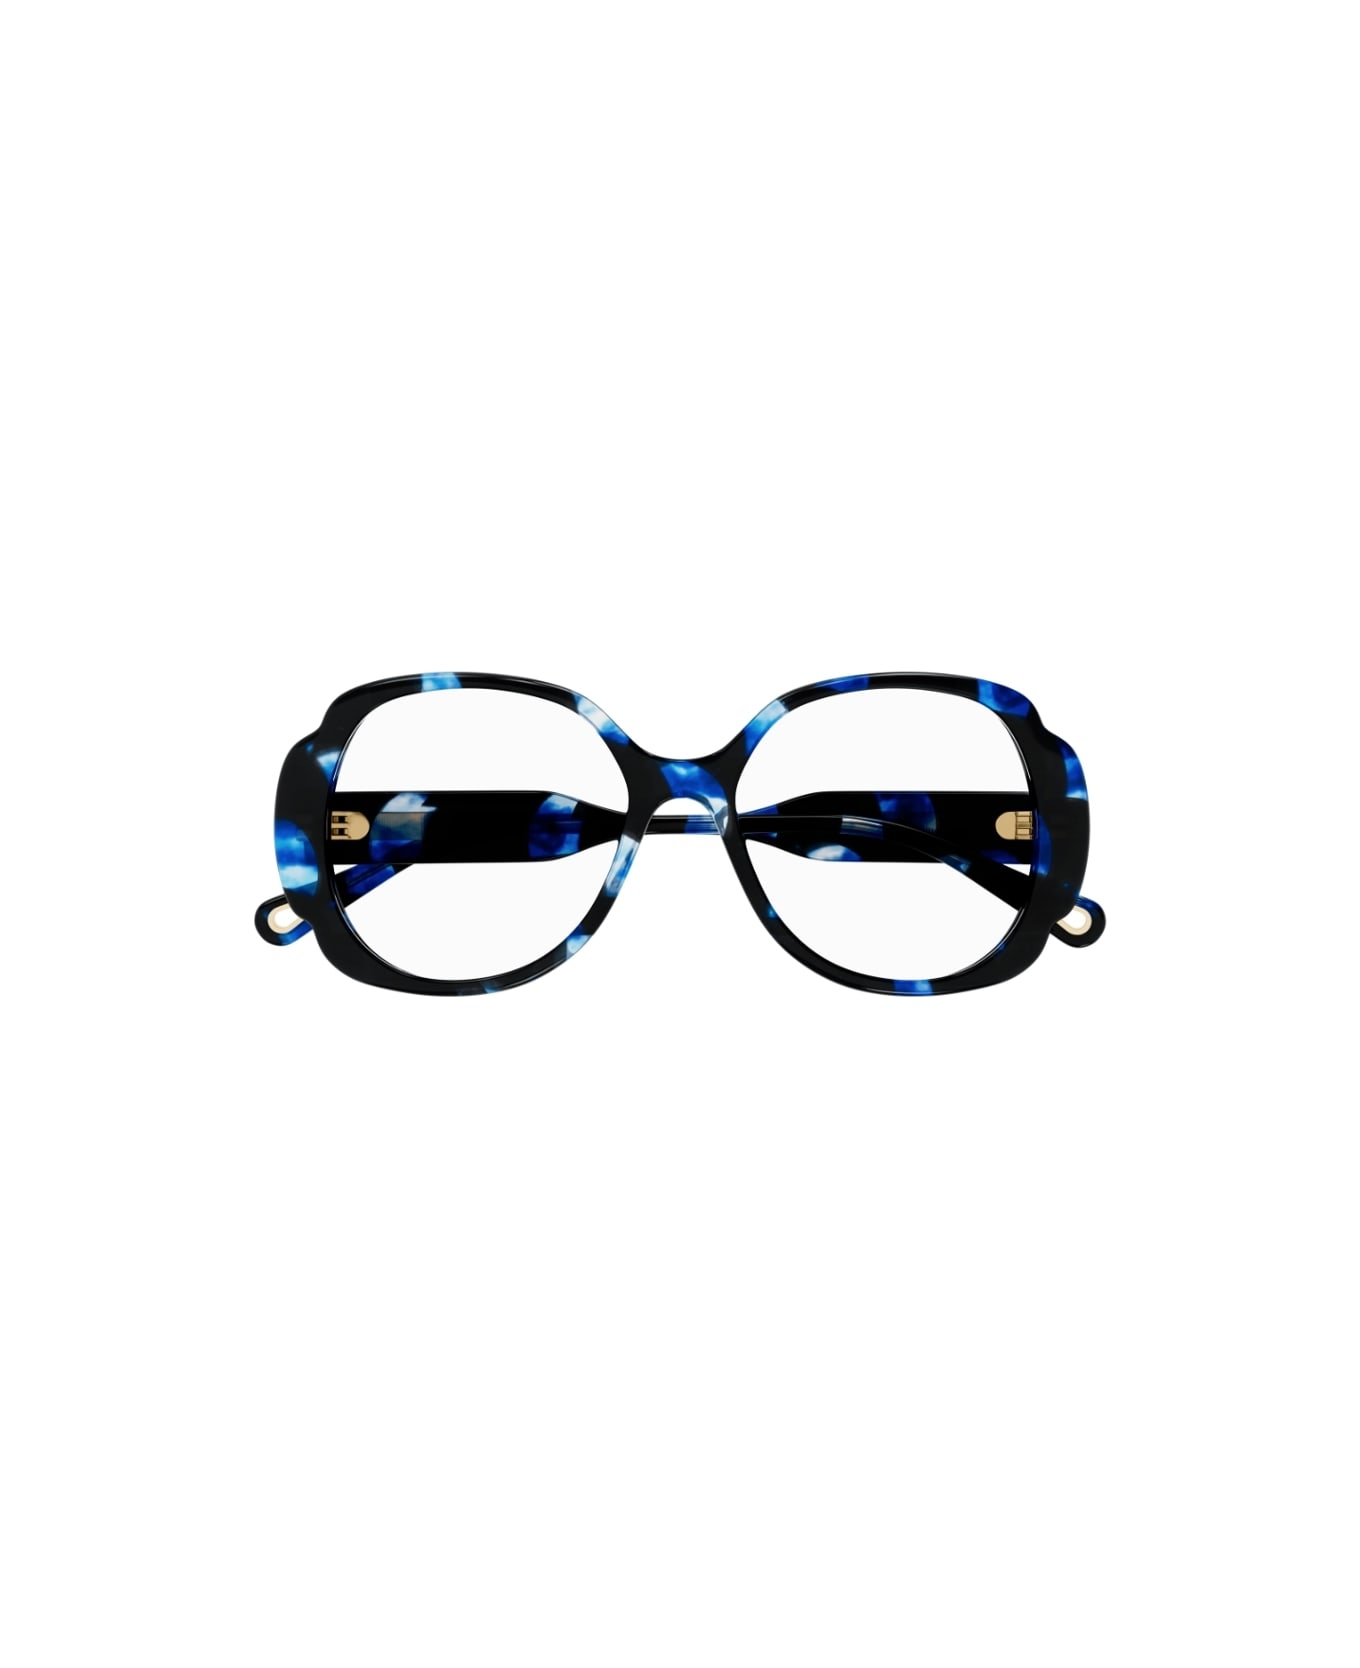 Chloé Eyewear CH0196O 004 Glasses